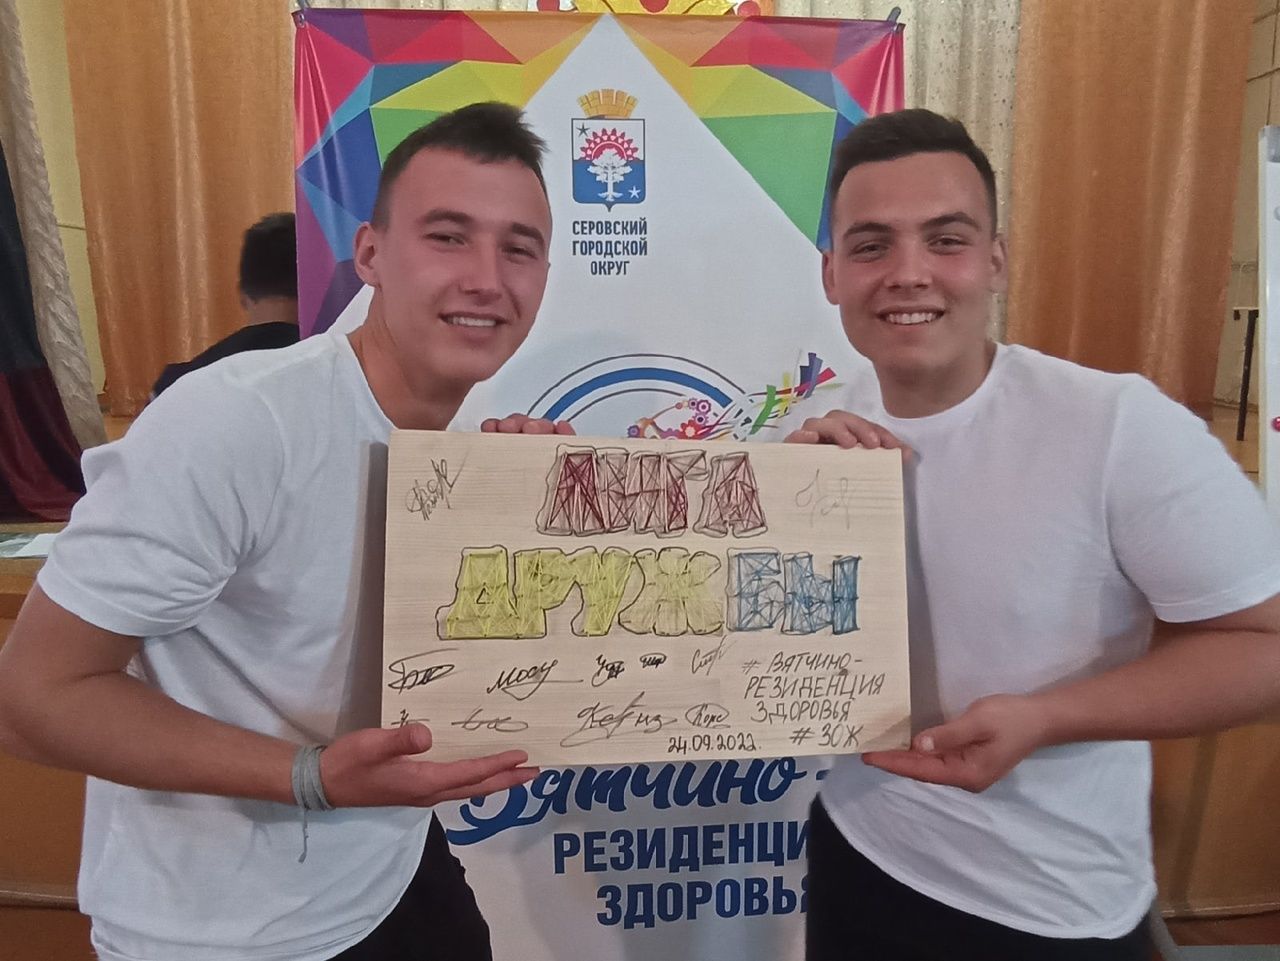 Молодежь из Красноярки стала победителем слета "Вятчино - резиденция здоровья"